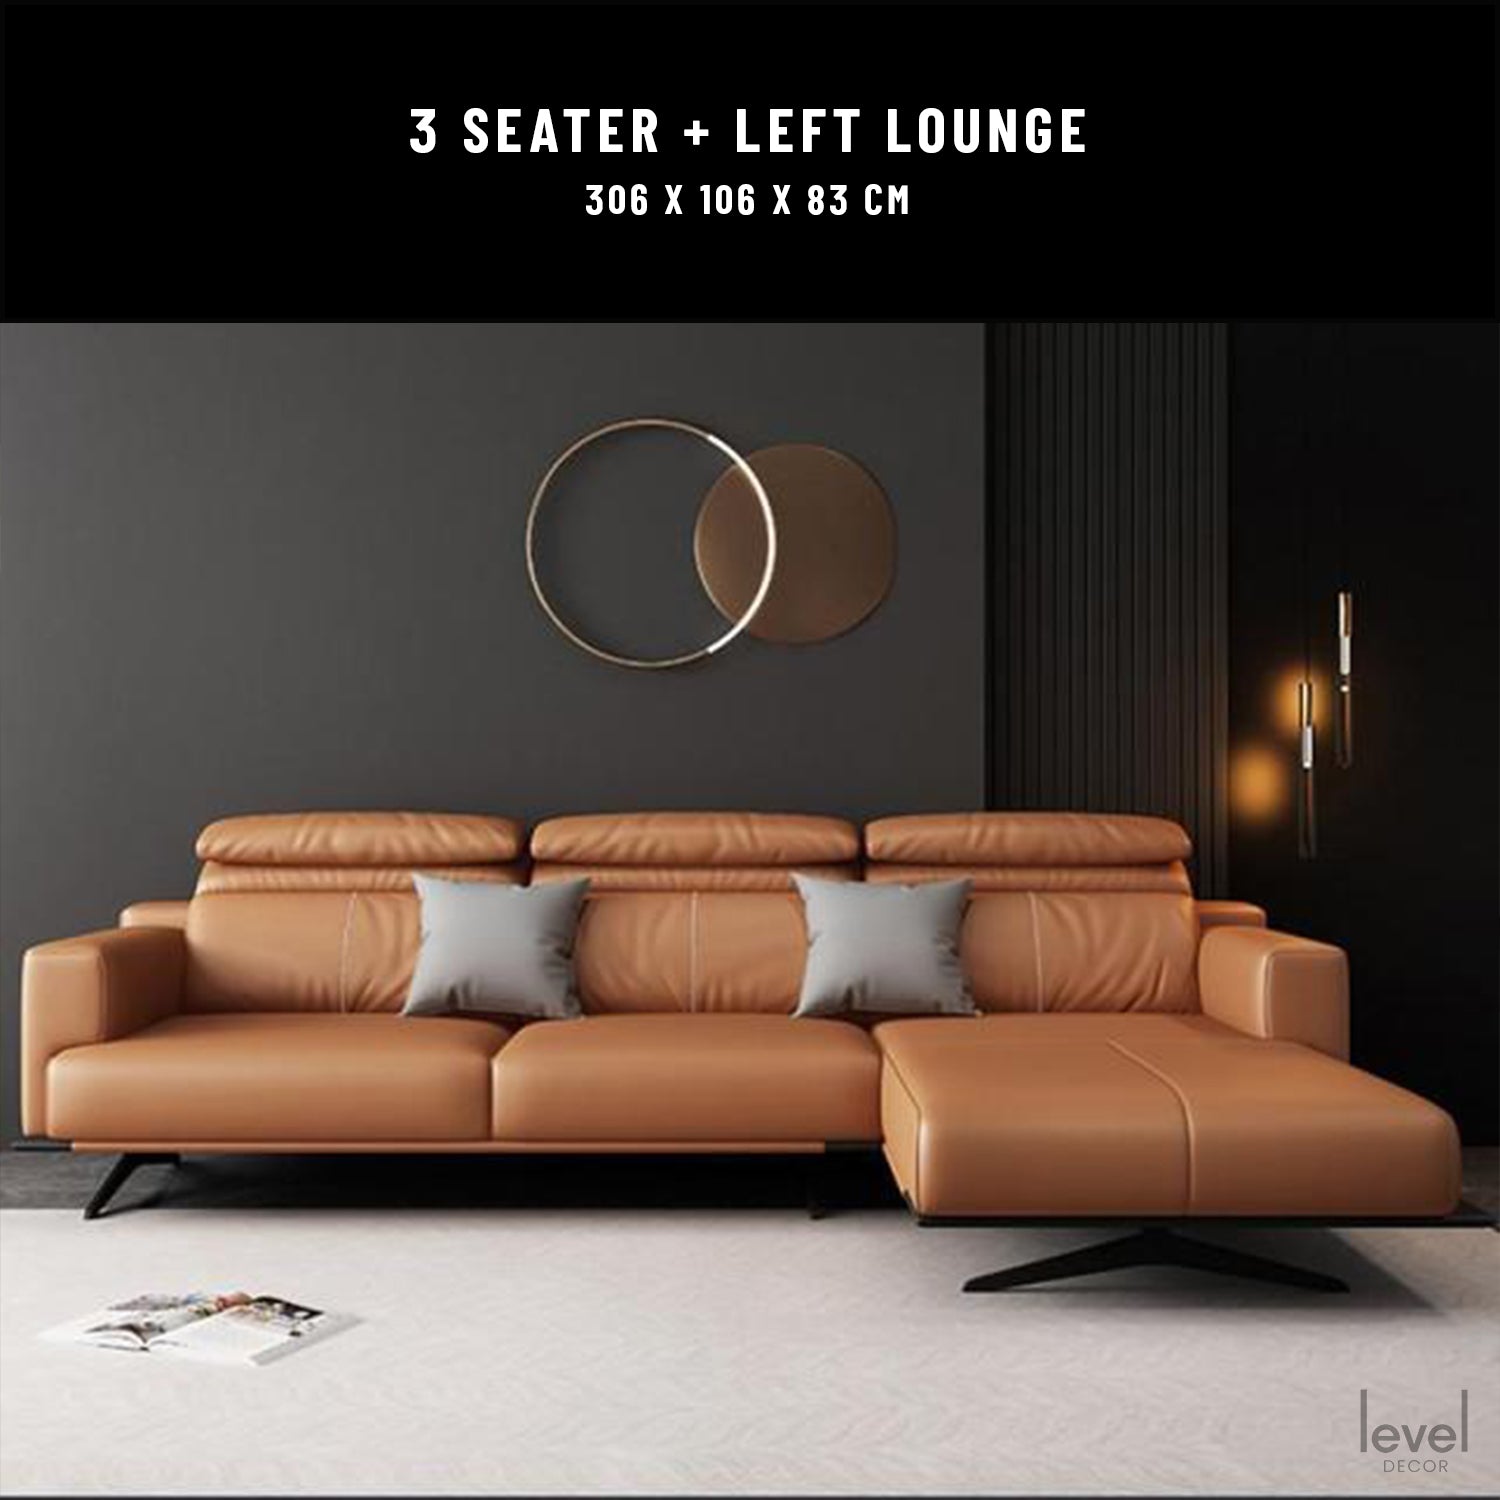 Romeo Italian Leather Sofa - left lounge - Level Decor